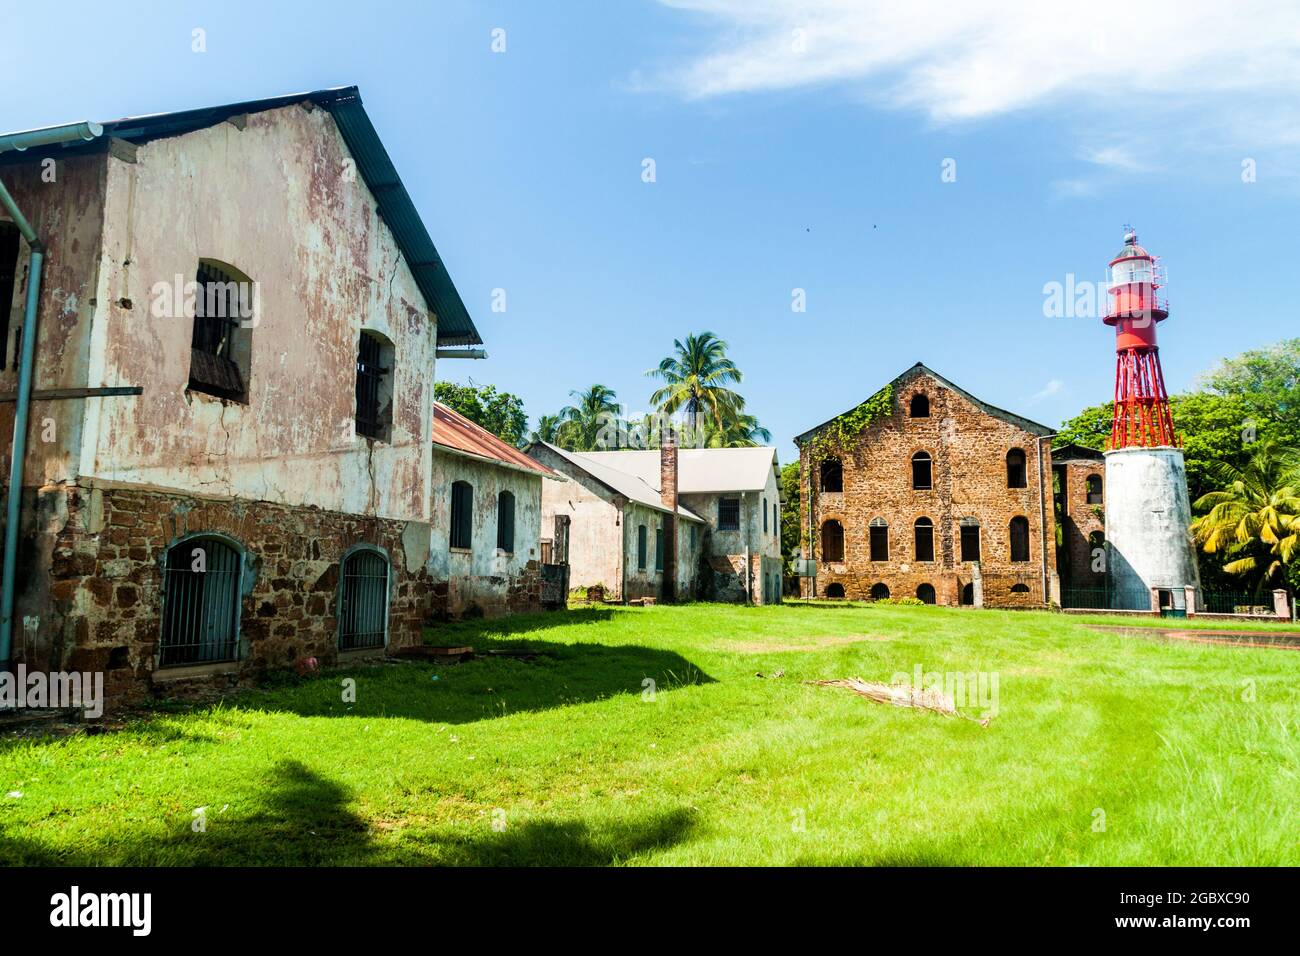 Edifici di ex colonia penale a Ile Royale, una delle isole di Iles du Salut (Isole della salvezza) nella Guyana francese Foto Stock